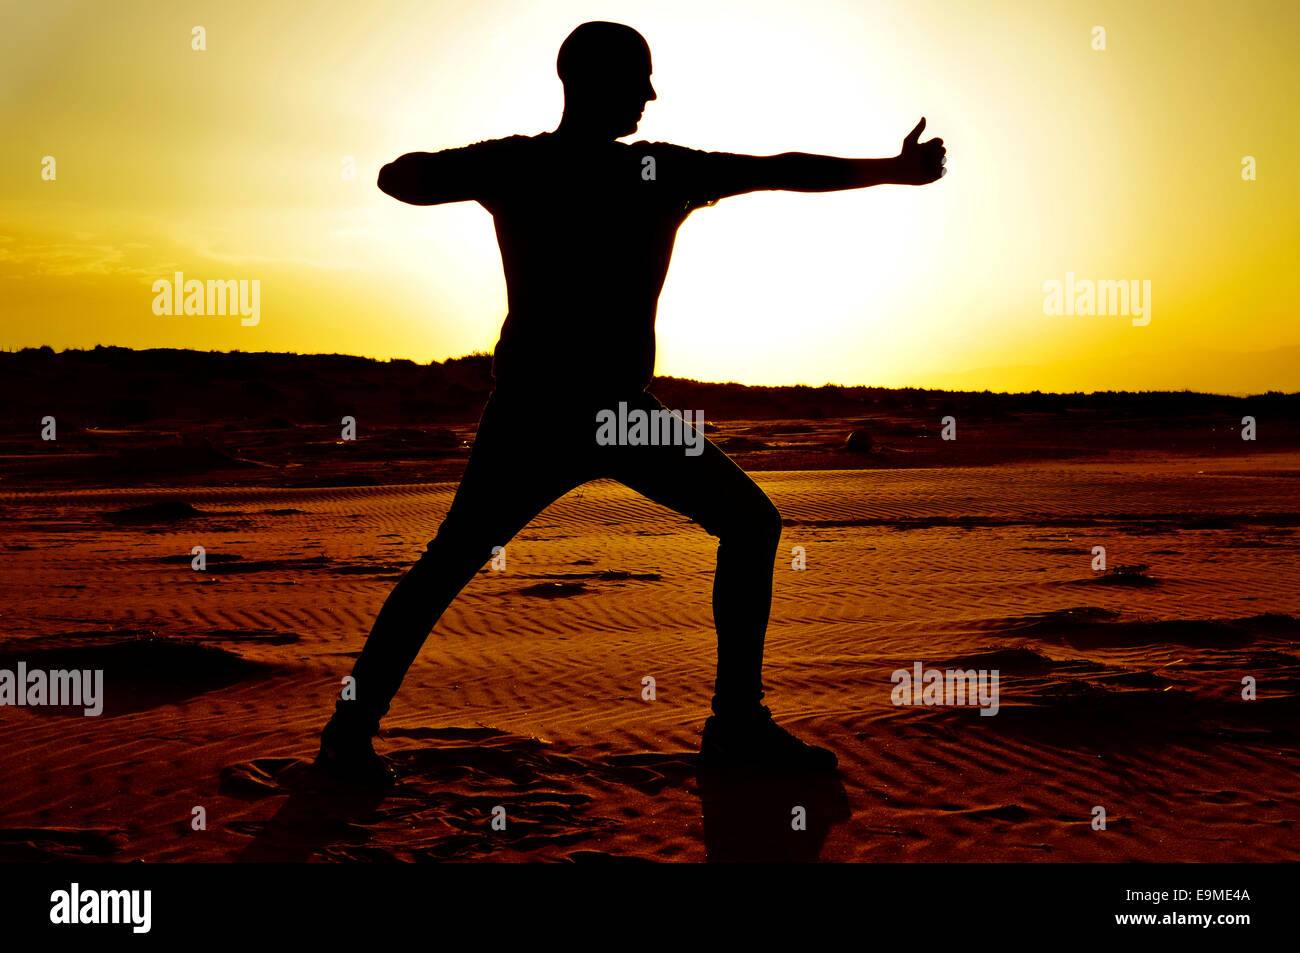 Un jeune homme pratiquant le yoga archer de poser dans les rétro-éclairage au coucher du soleil Banque D'Images